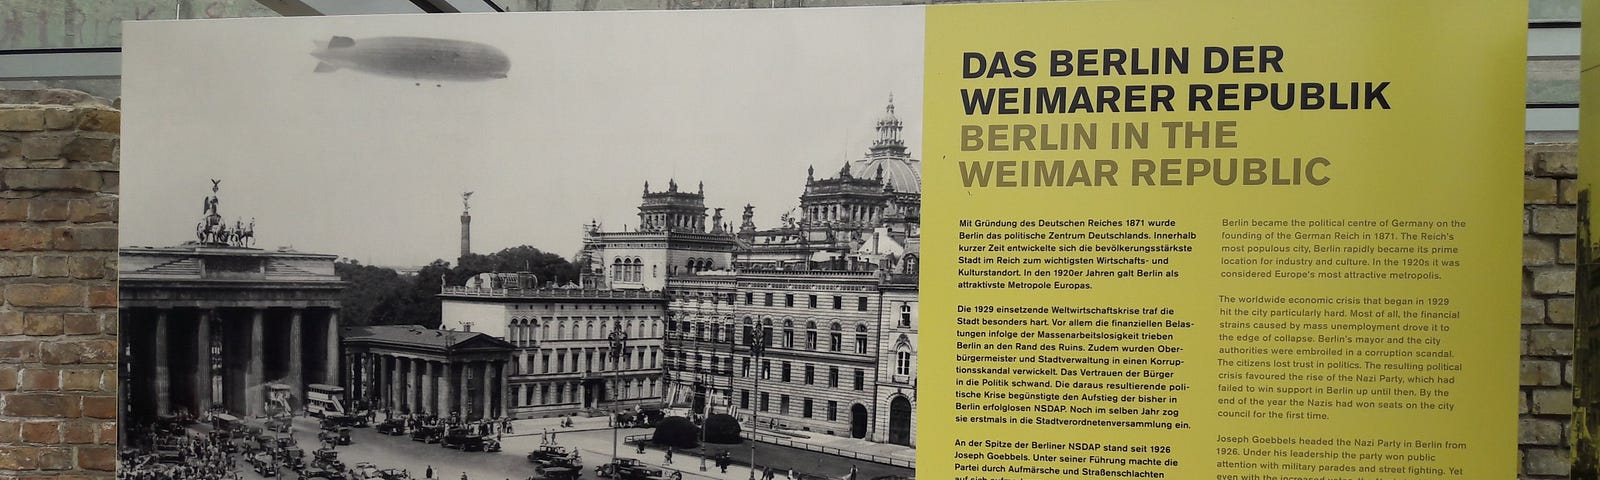 Berlin in the Weimar Republic